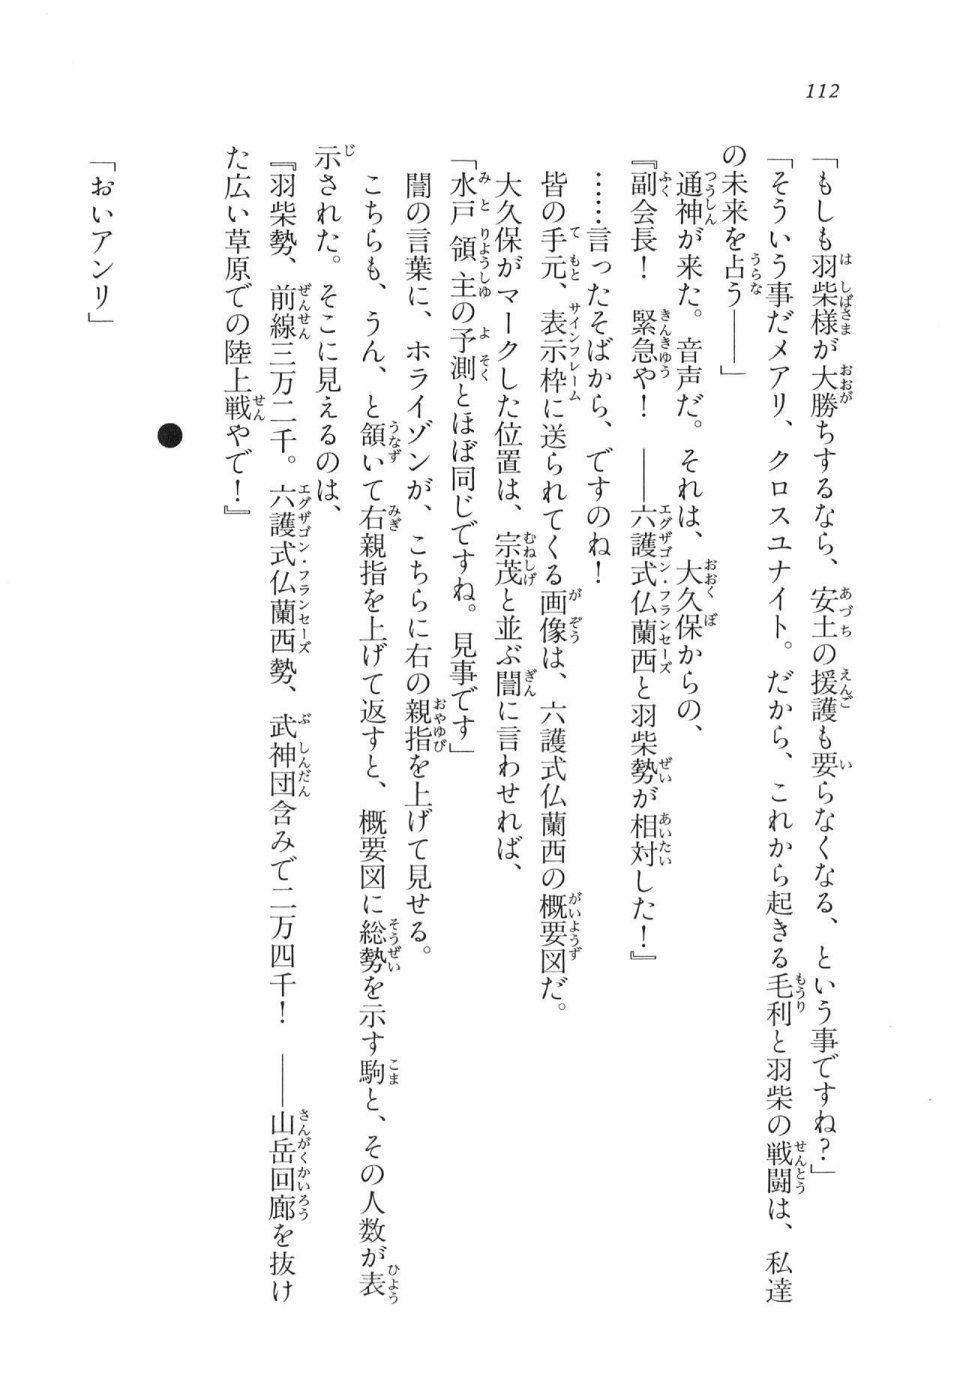 Kyoukai Senjou no Horizon LN Vol 11(5A) - Photo #112